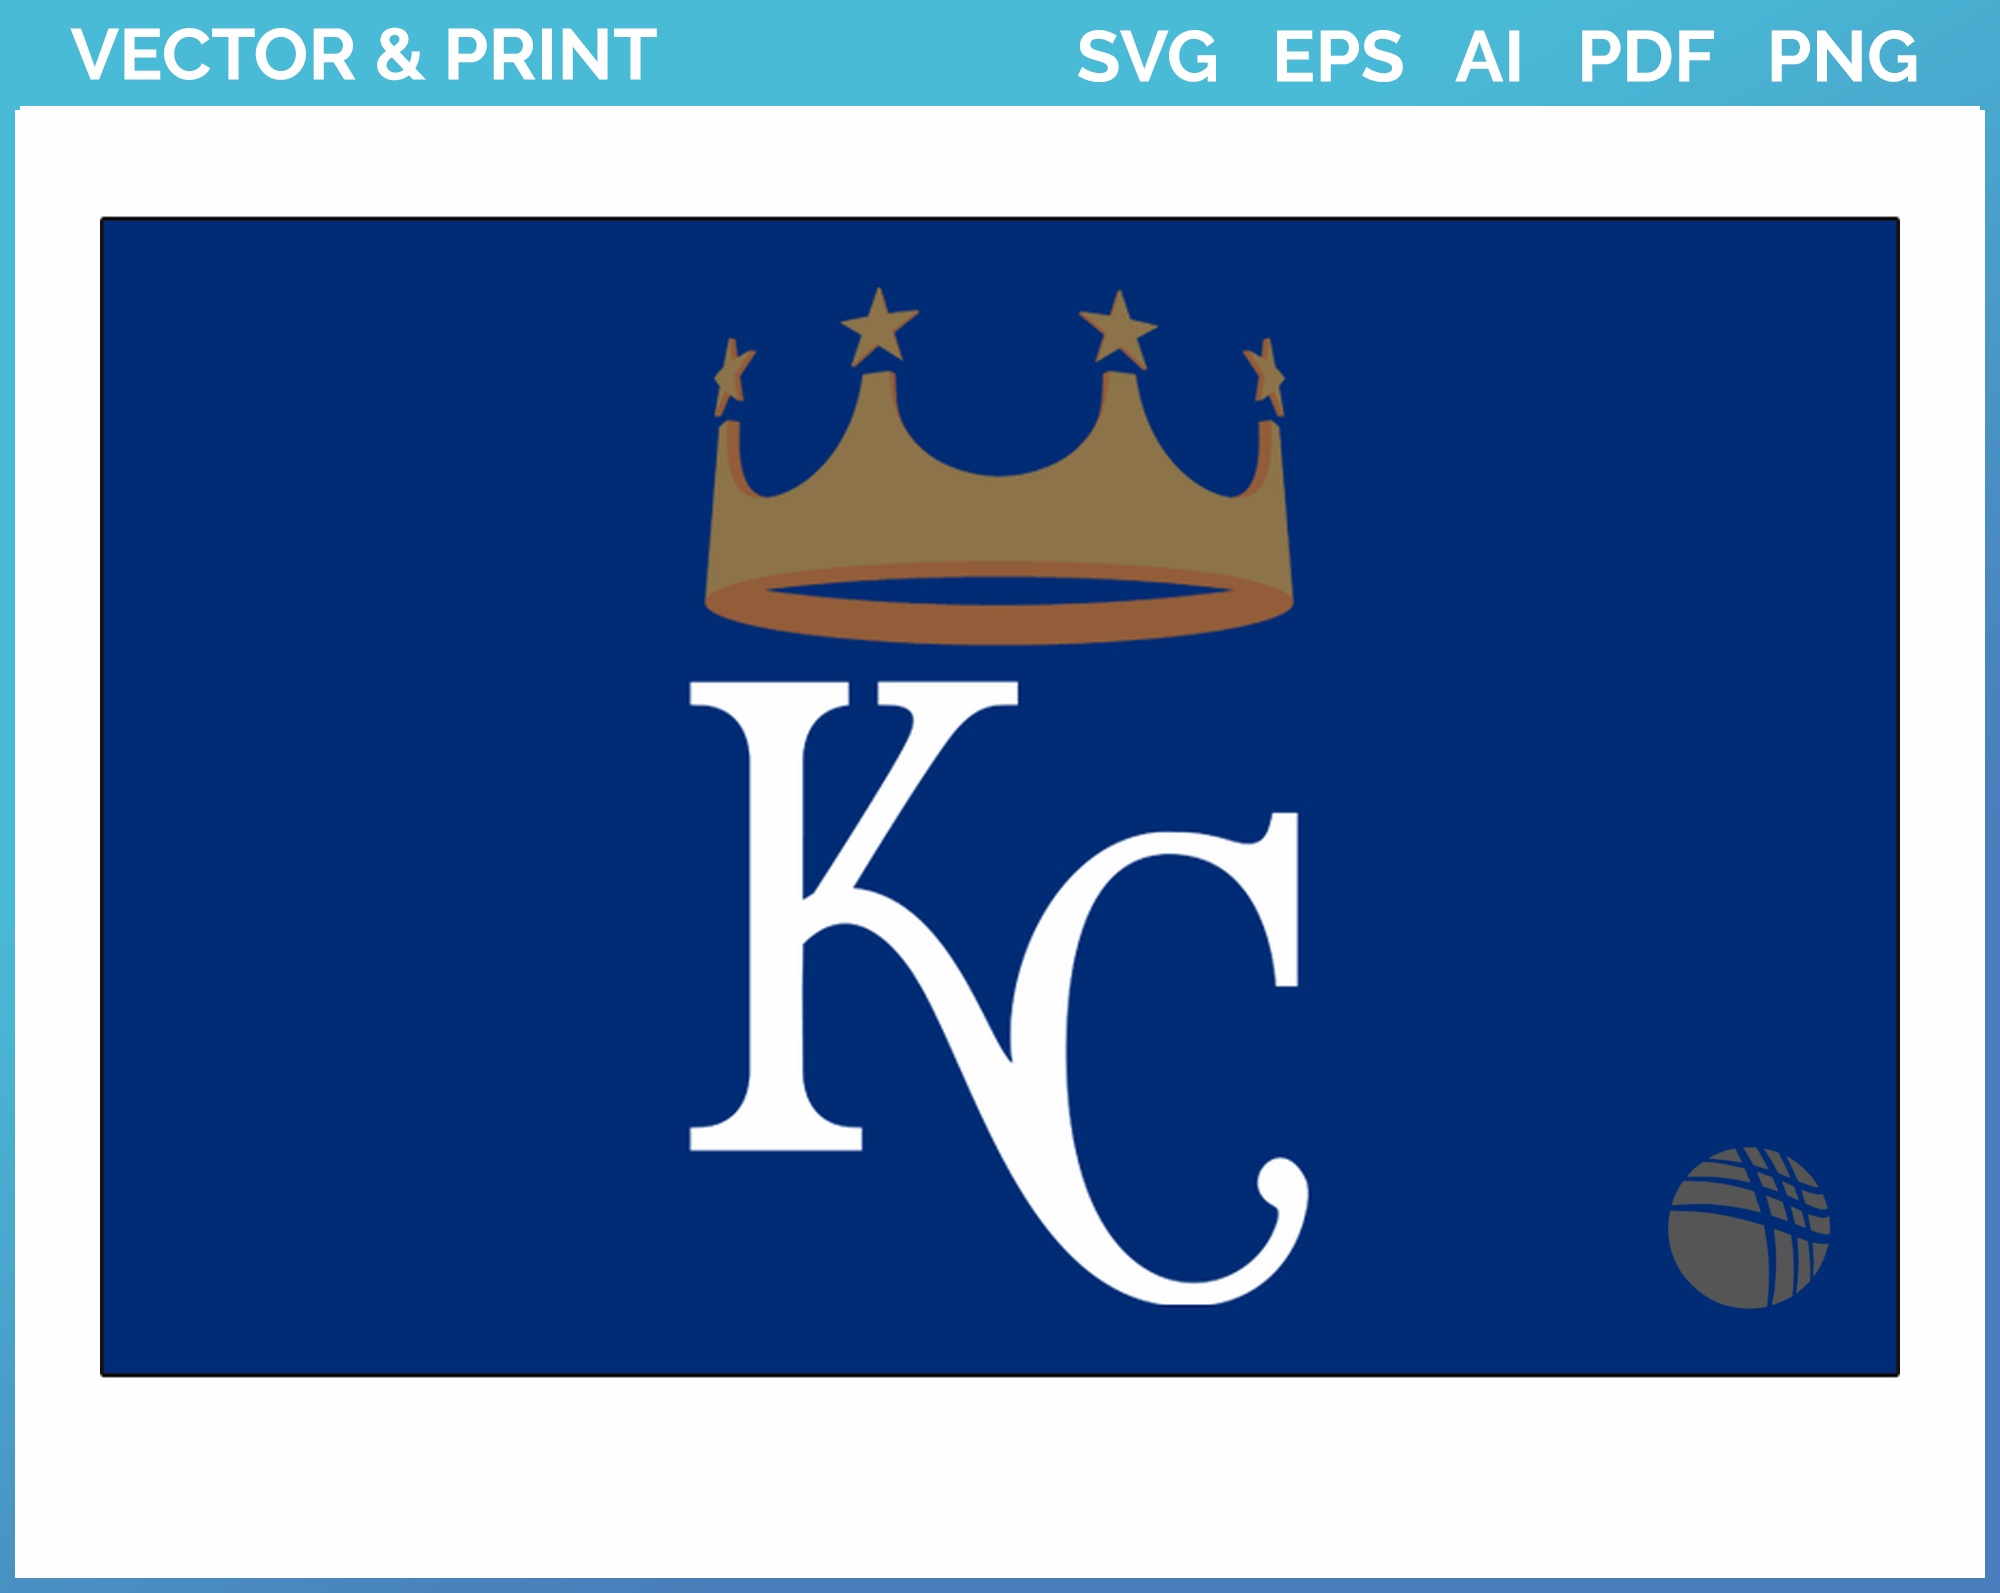 Kansas City Royals Logo SVG, Kansas City Royals Baseball